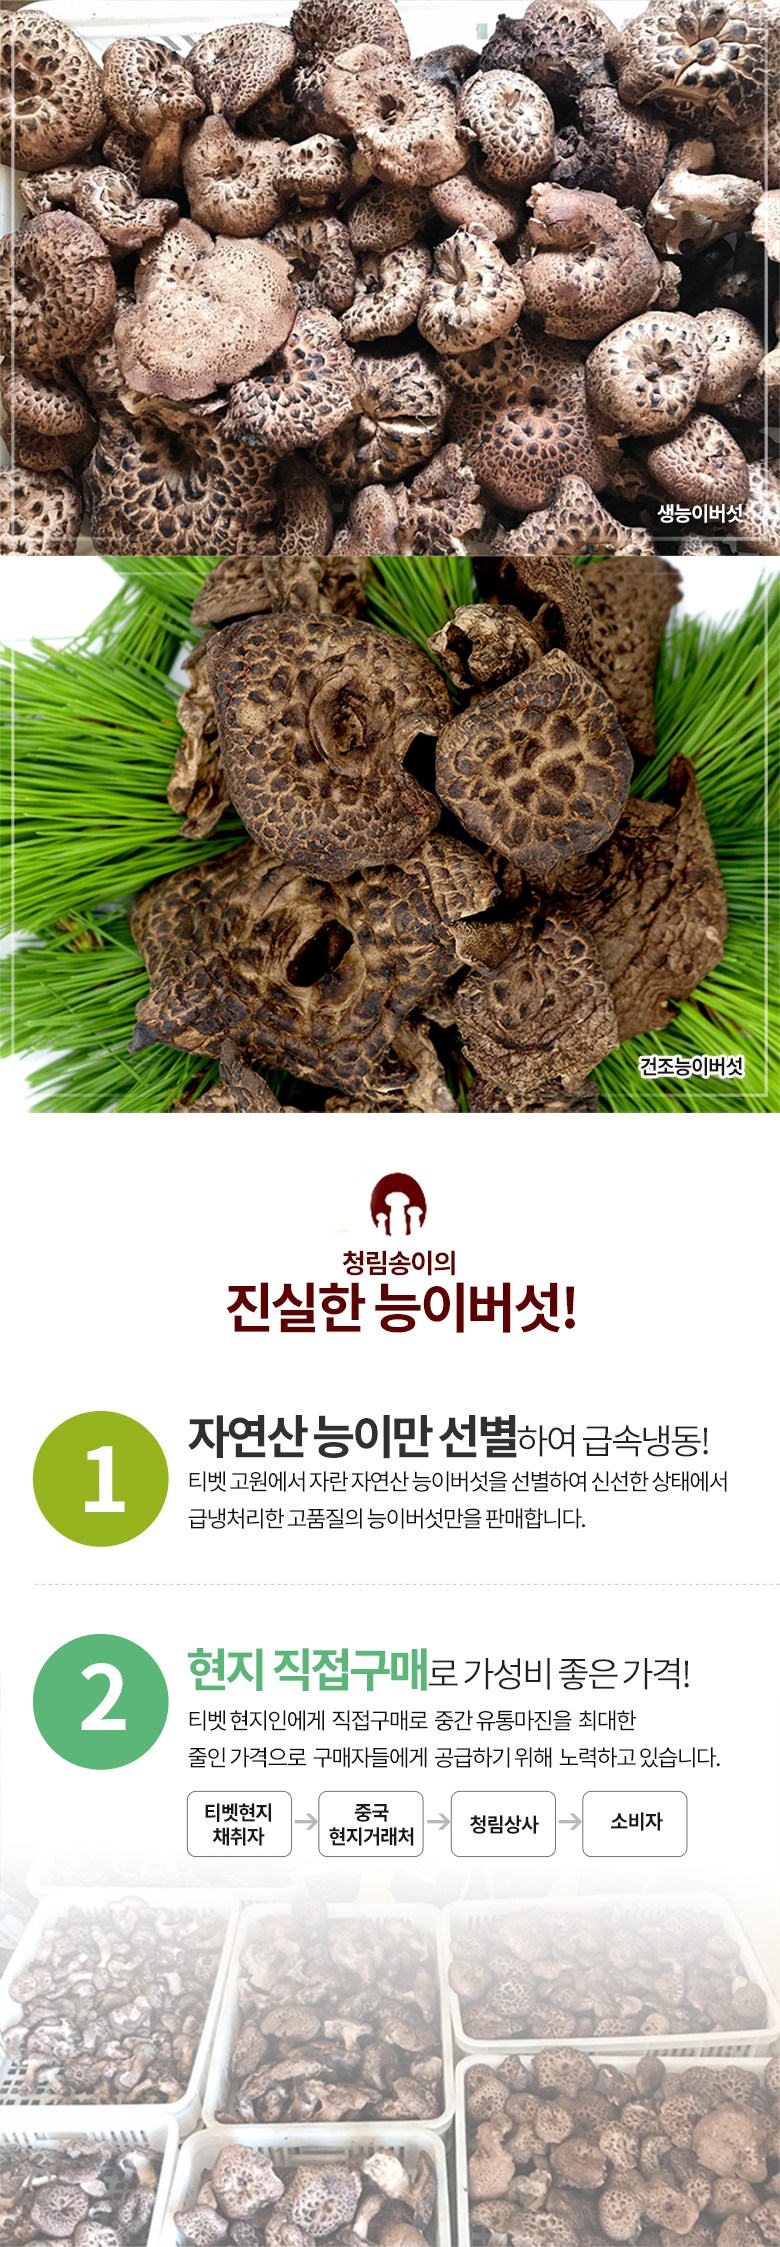 능이 버섯 가격 자연산 자연산 능이버섯